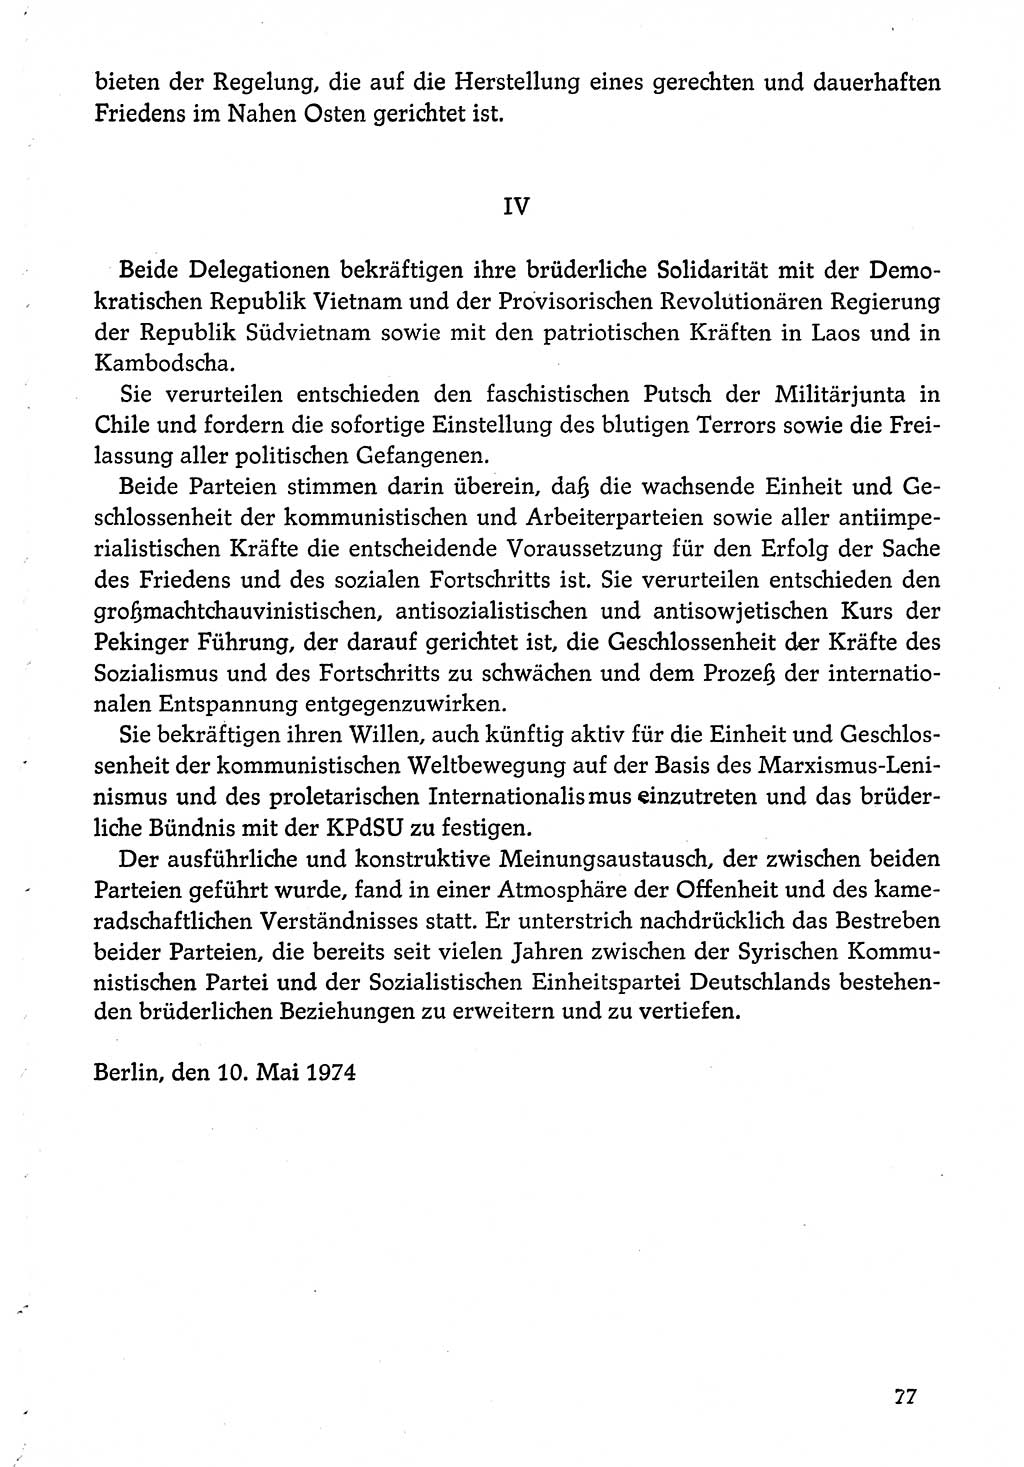 Dokumente der Sozialistischen Einheitspartei Deutschlands (SED) [Deutsche Demokratische Republik (DDR)] 1974-1975, Seite 77 (Dok. SED DDR 1978, Bd. ⅩⅤ, S. 77)